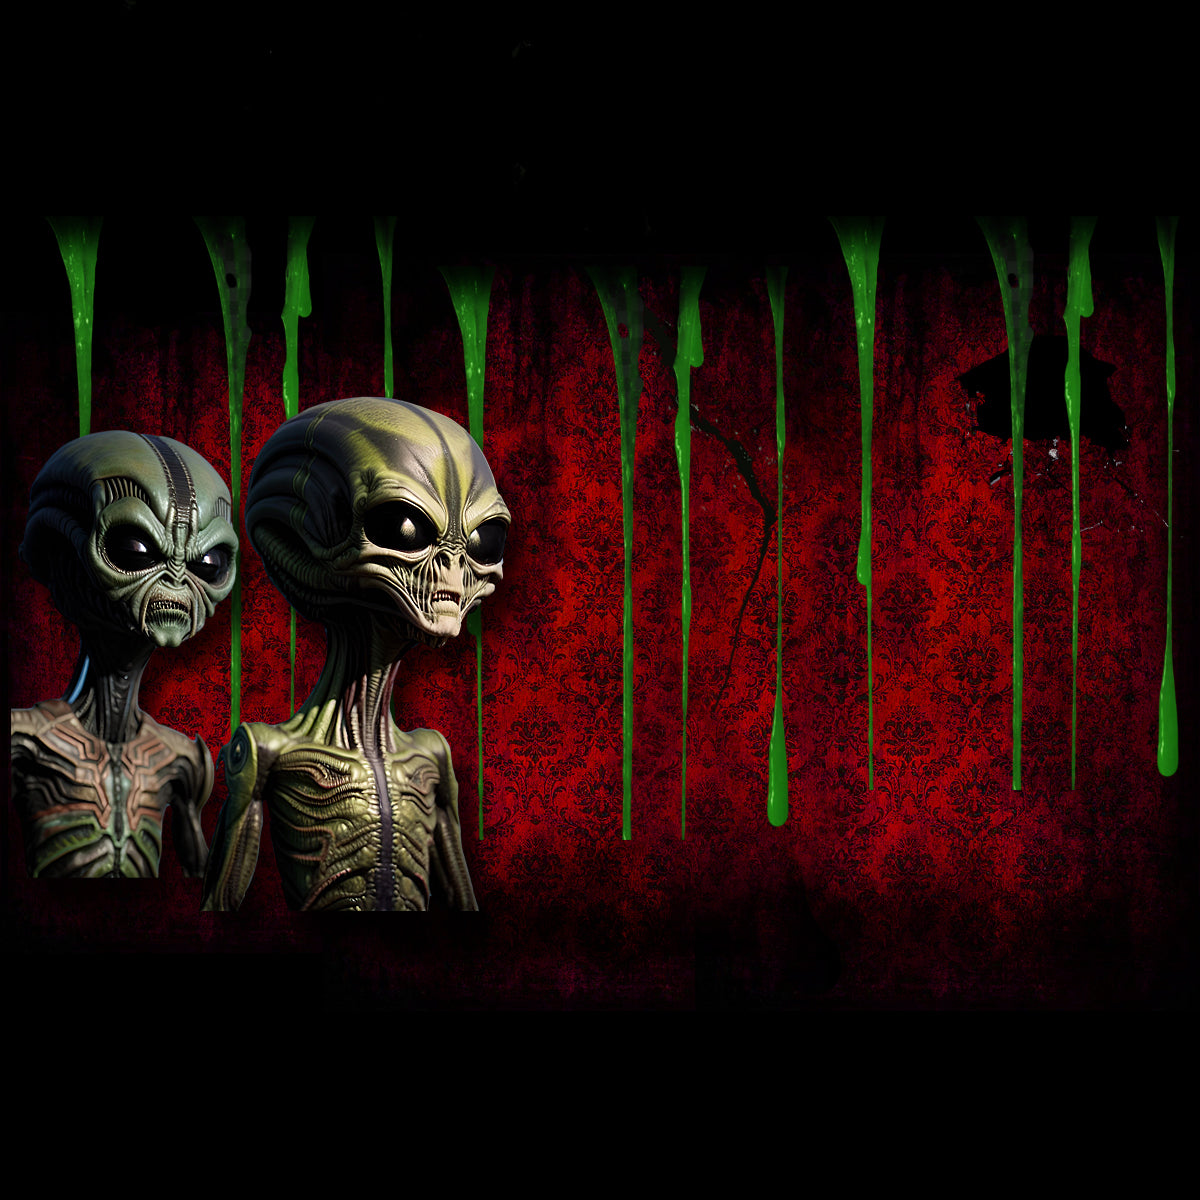 Alien Masks